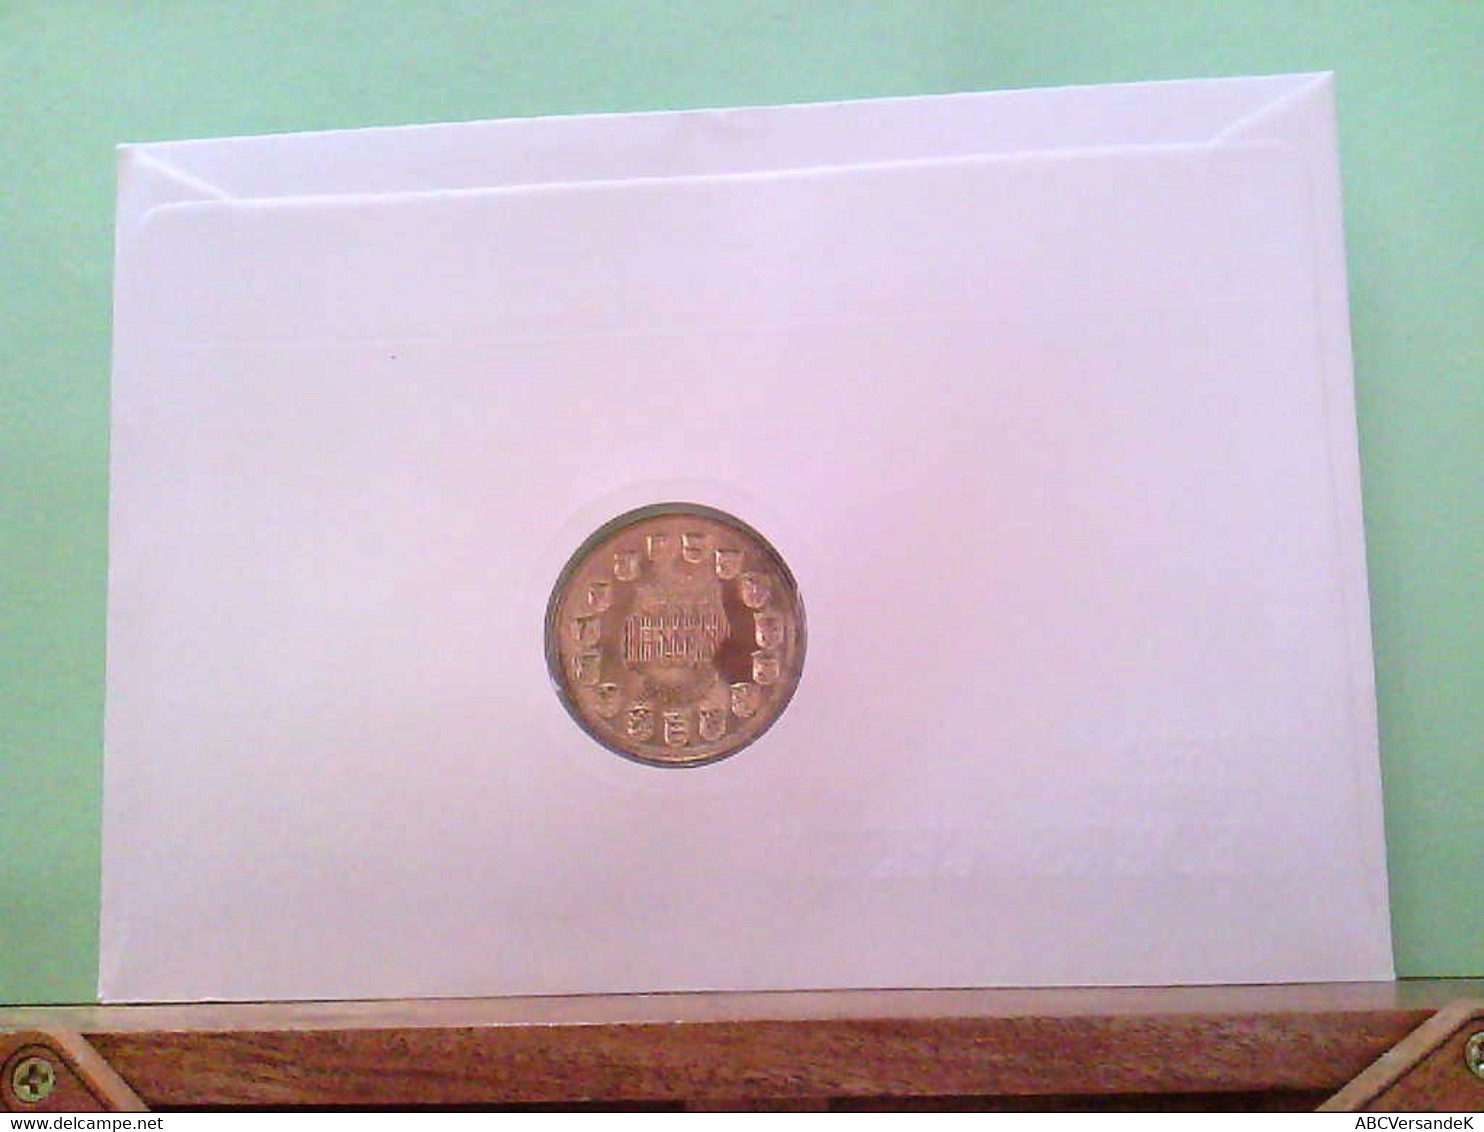 Numiesbrief Von 1991, Deutsches Bundesland Niedersachsen, Medaille,Niedersachsen. - Numismatics